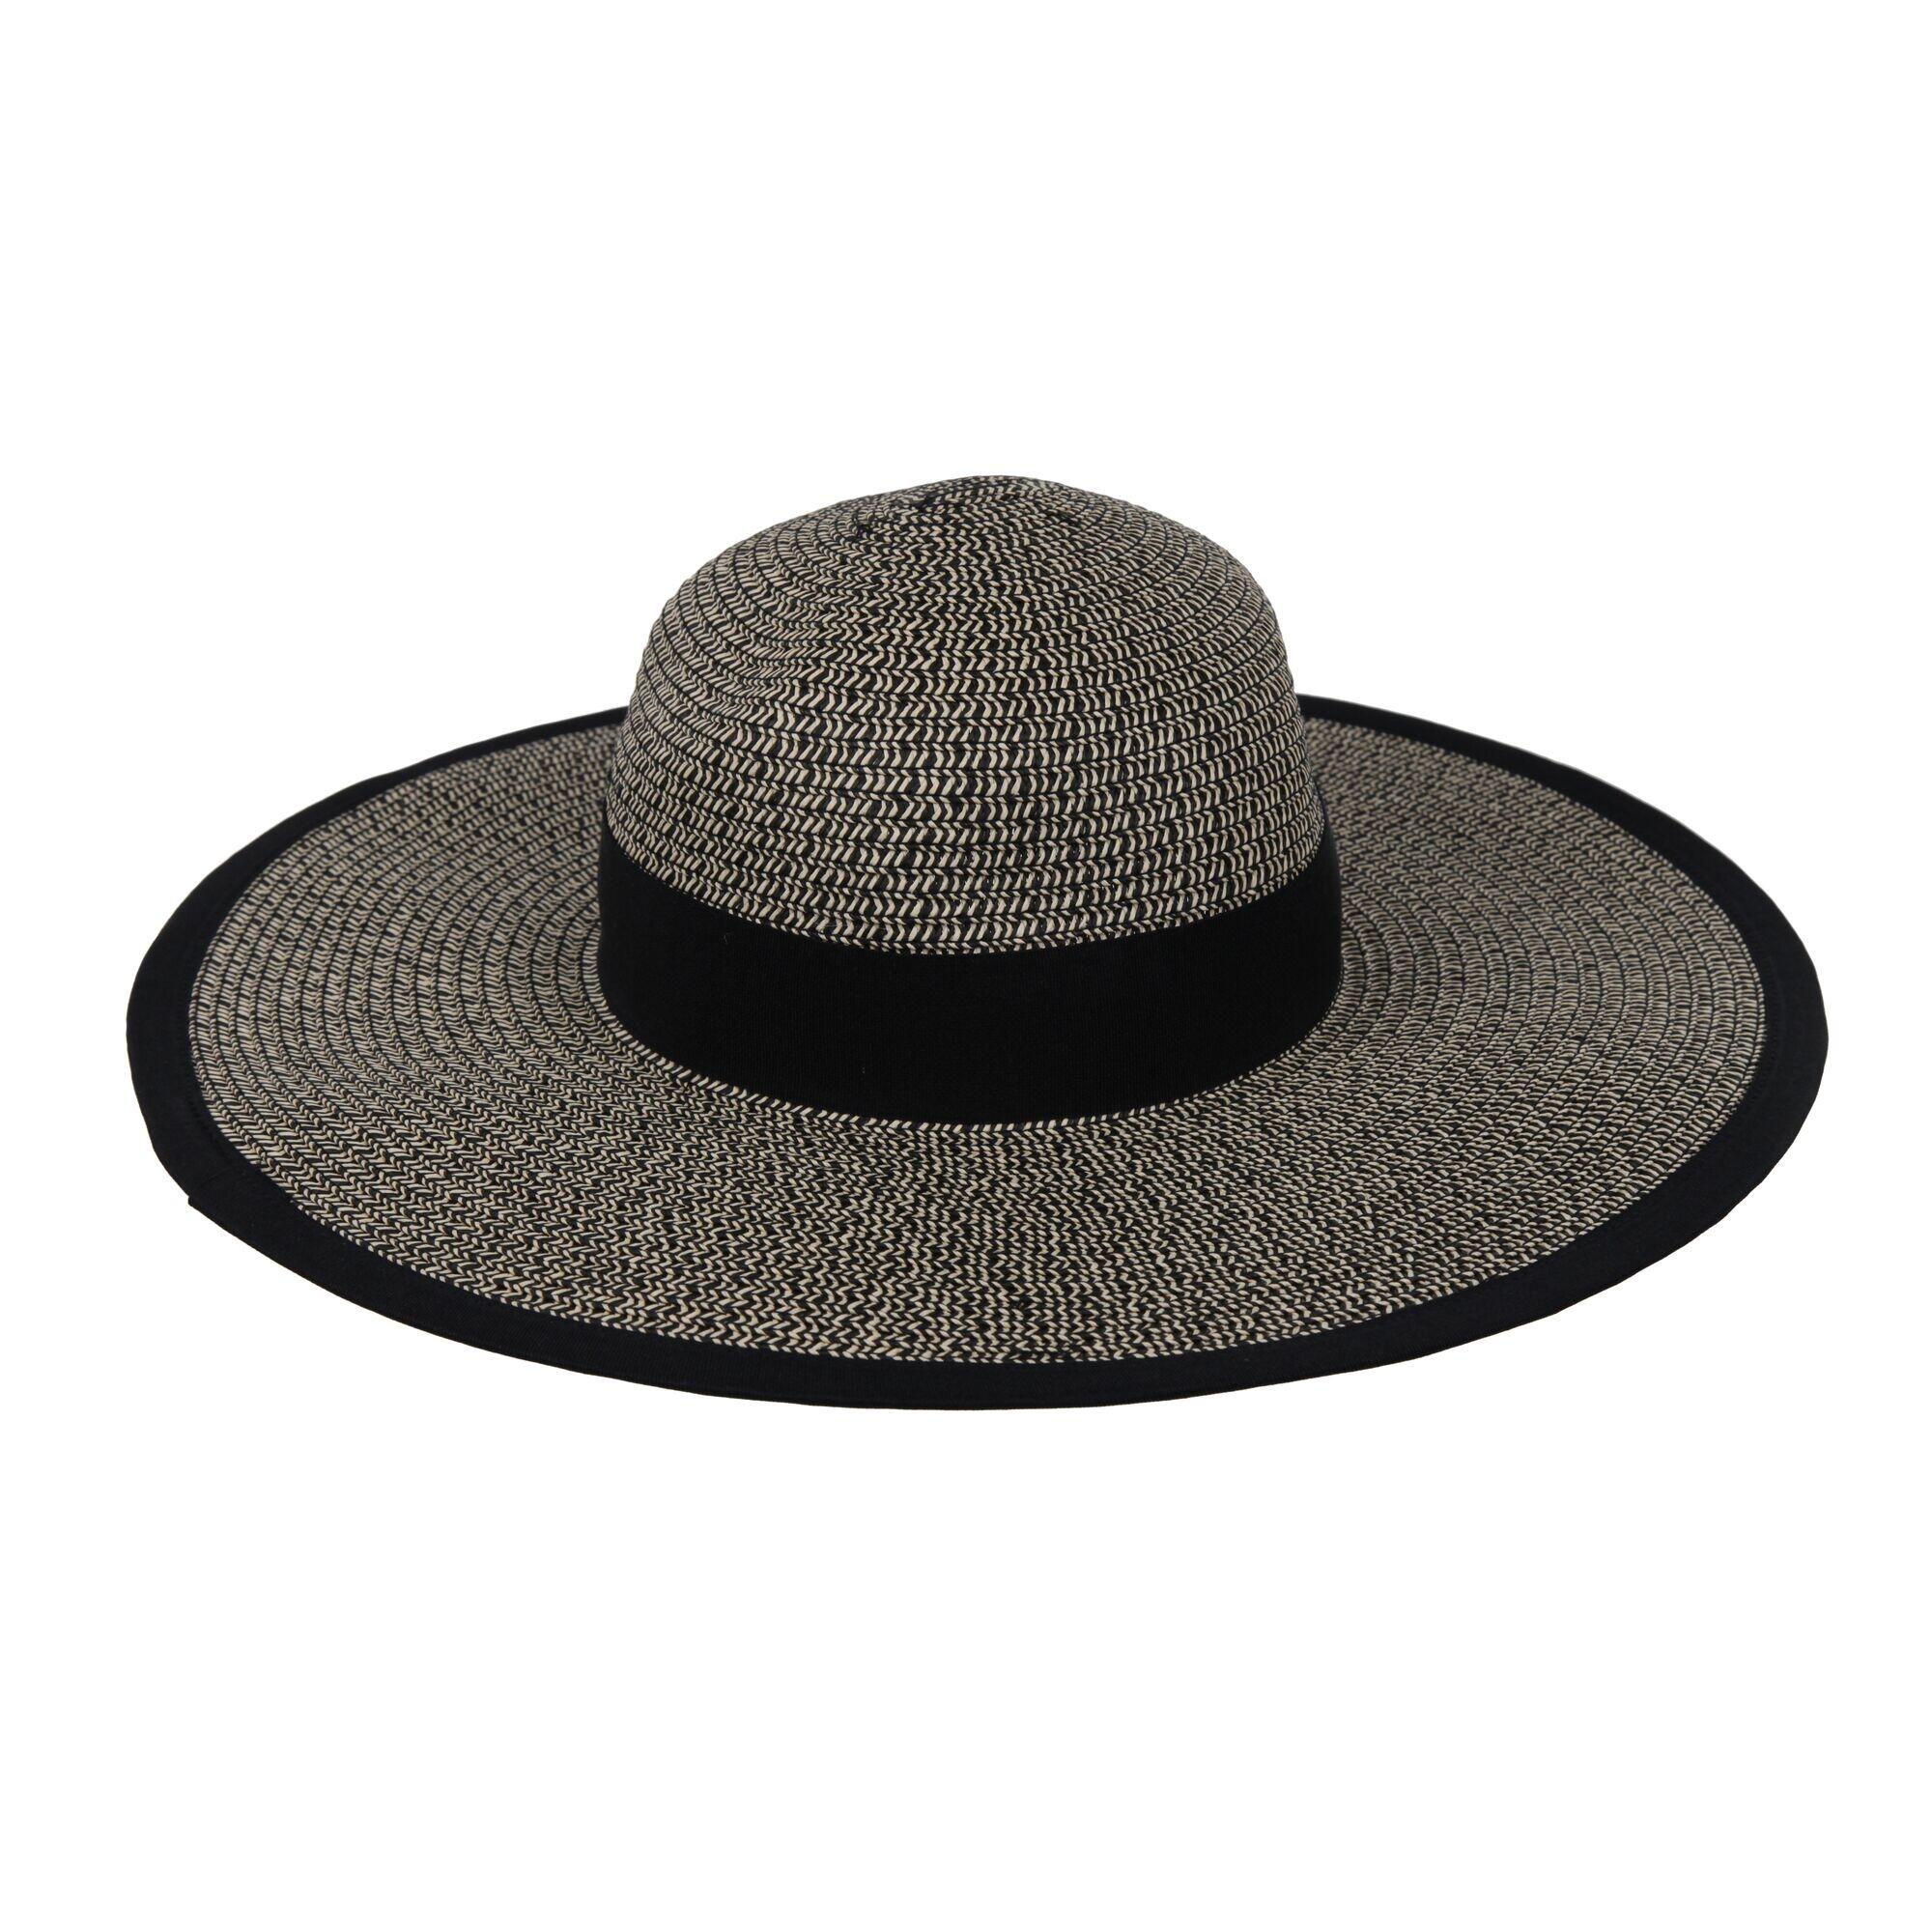 REGATTA Womens/Ladies Straw Sun Hat (Black/Natural)